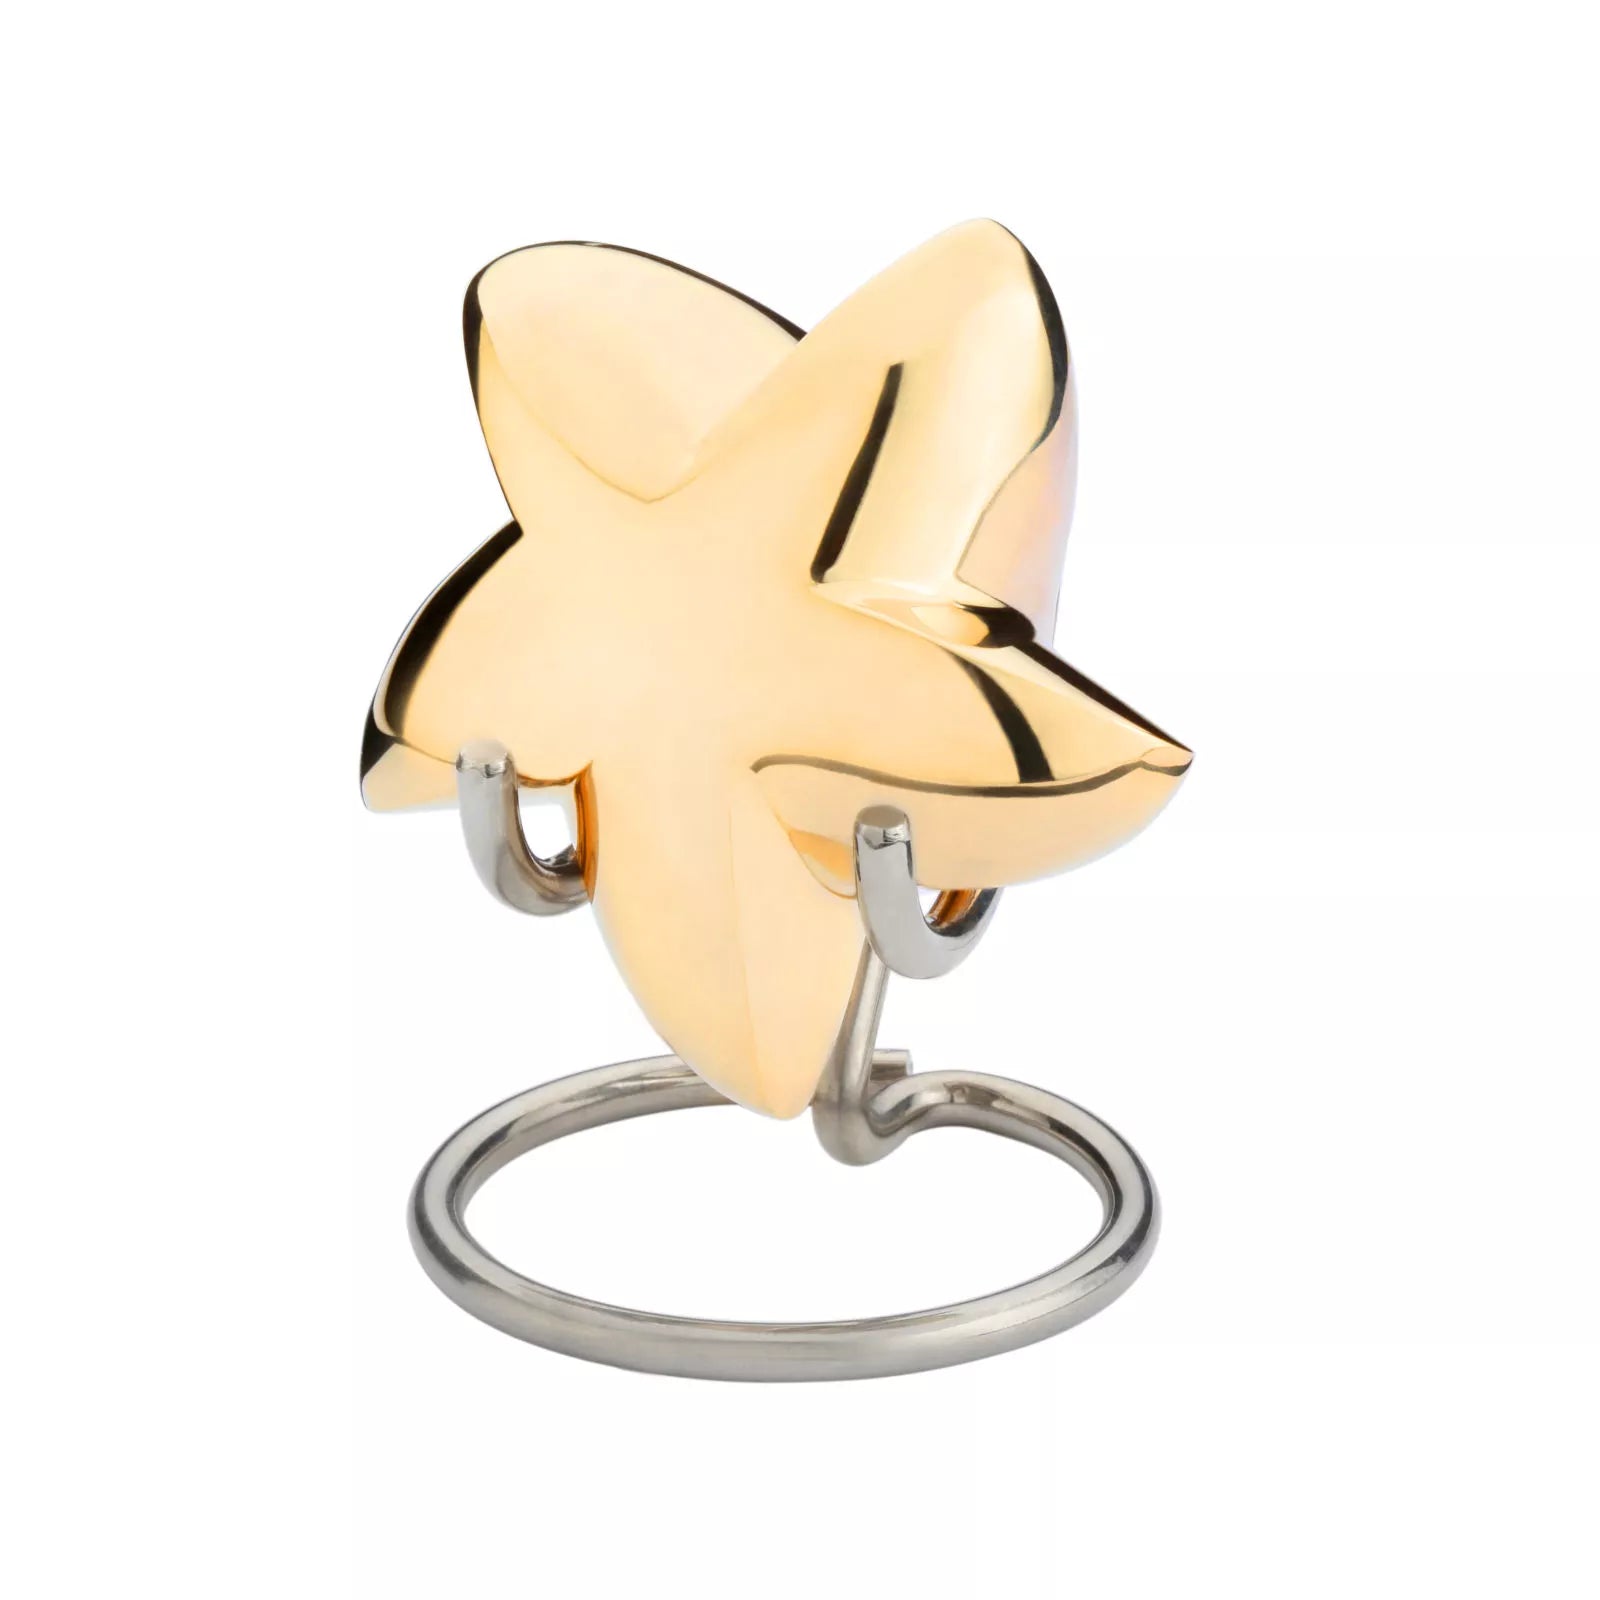 Brass mini urn - Star shaped